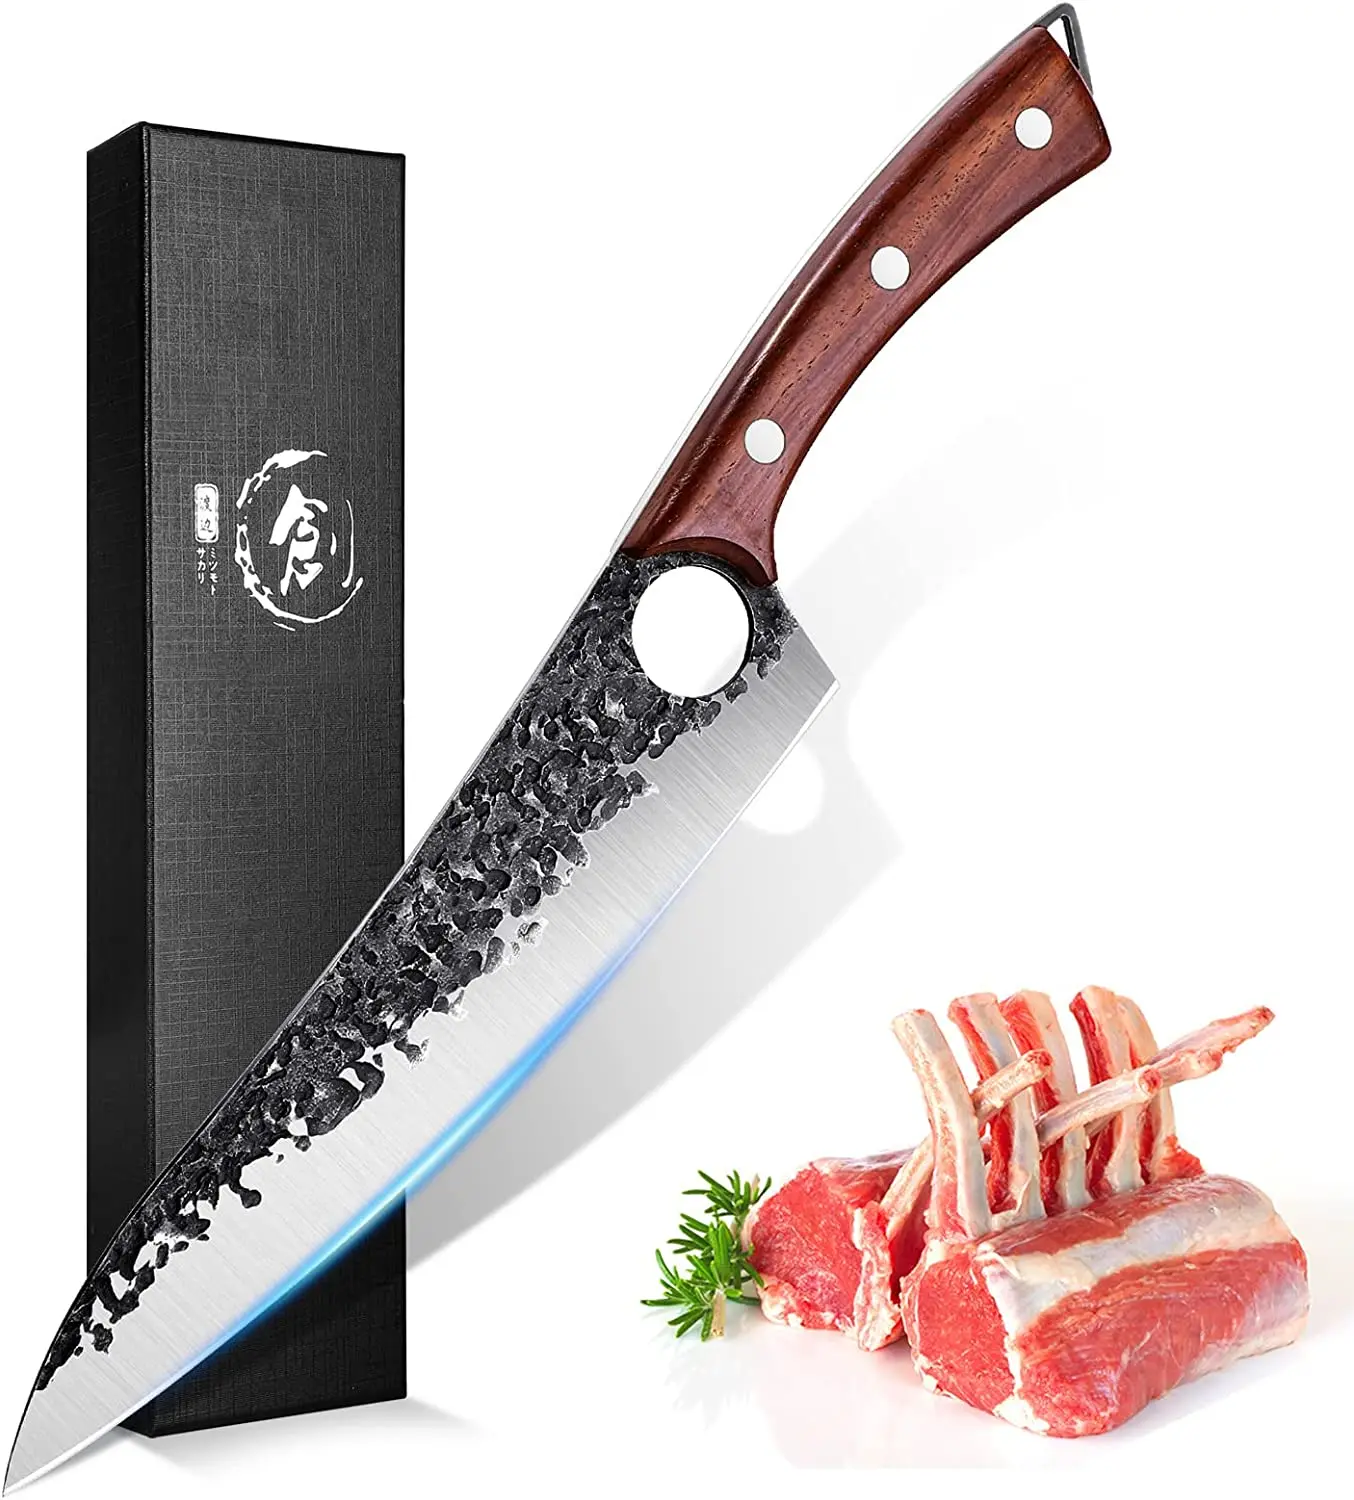 

Couteau de boucher extra-tranchant pour couper couper la viande et les légumes Couteau de cuisine acier inoxydable au carbone